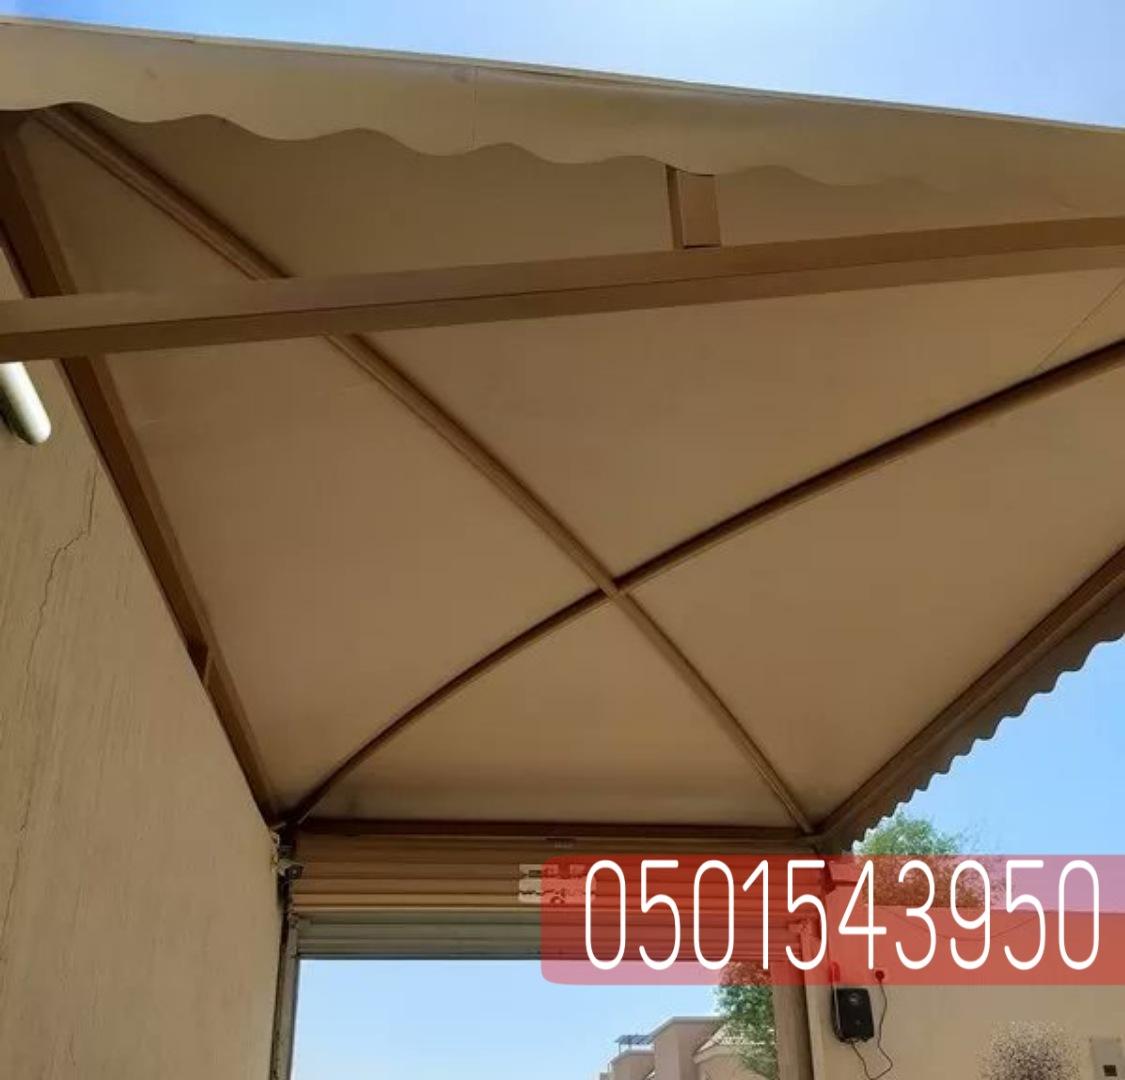 تصاميم مظلات سيارات خارجية مبتكره,0501543950 518722384